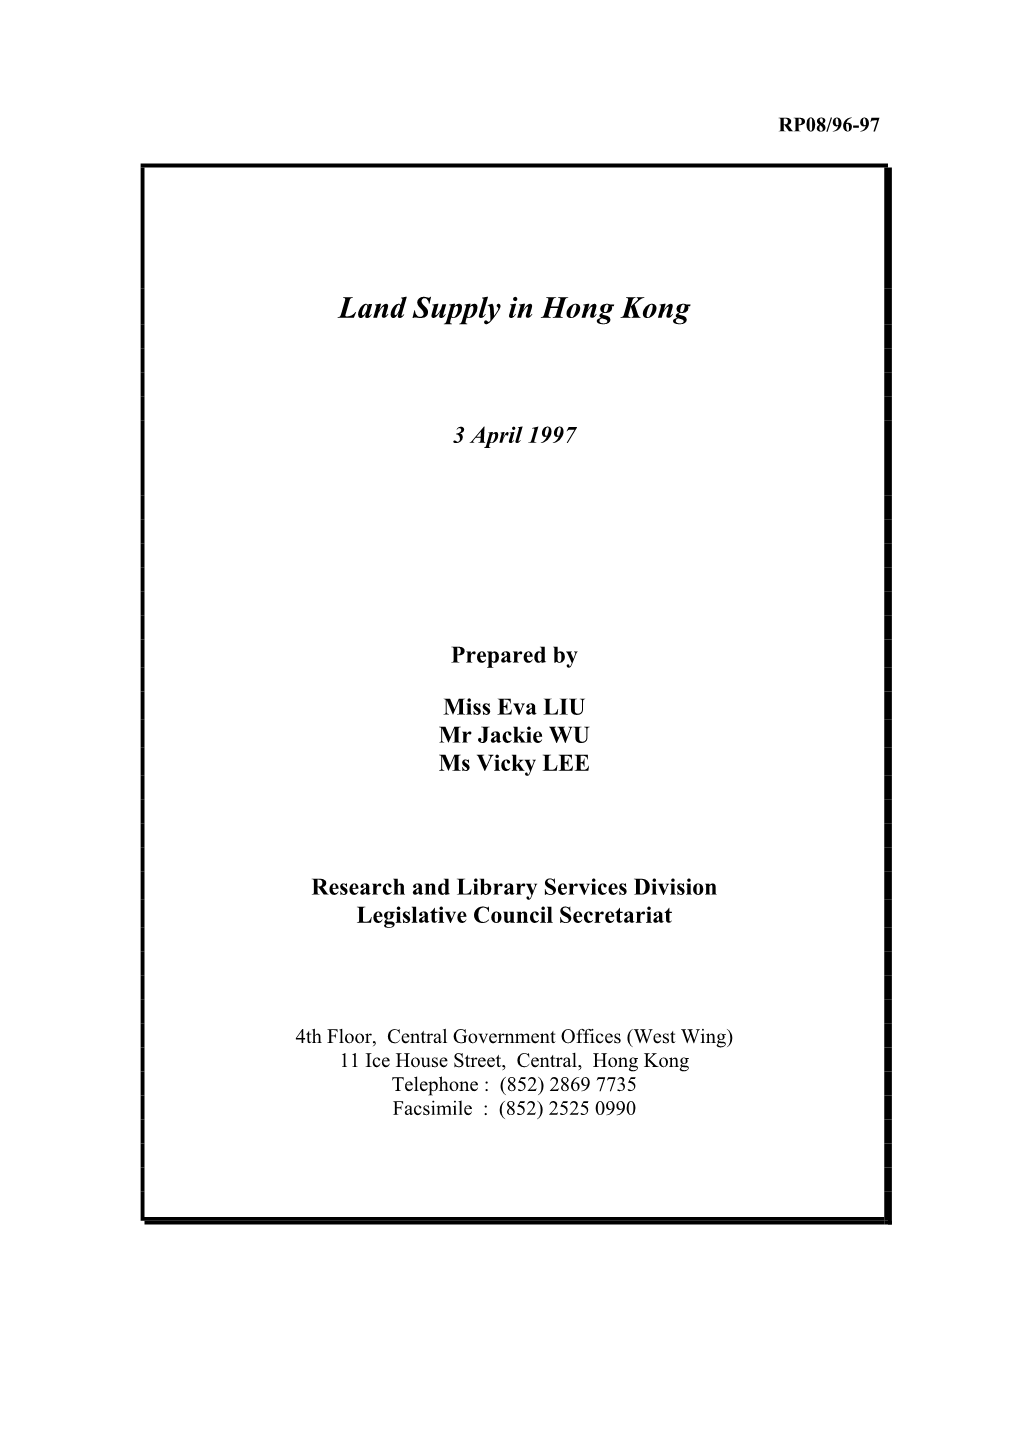 Land Supply in Hong Kong